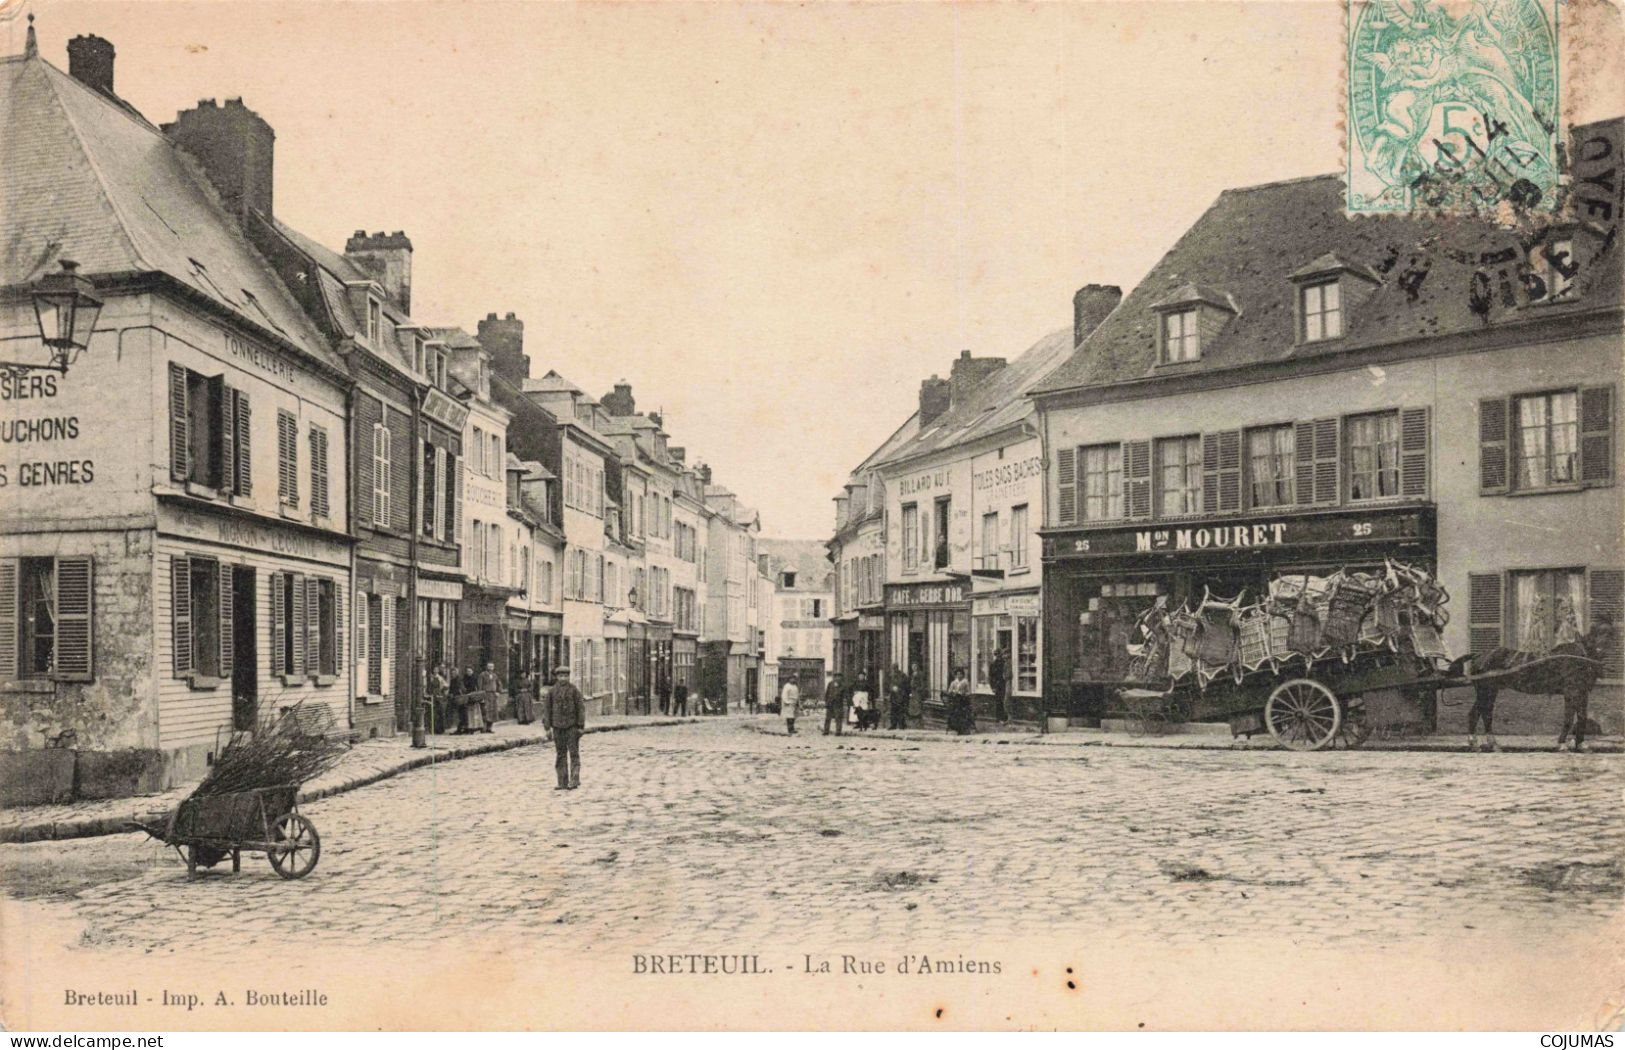 60 - BRETEUIL - S17180 - La Rue D'Amiens - Mon Mouret - L23 - Breteuil